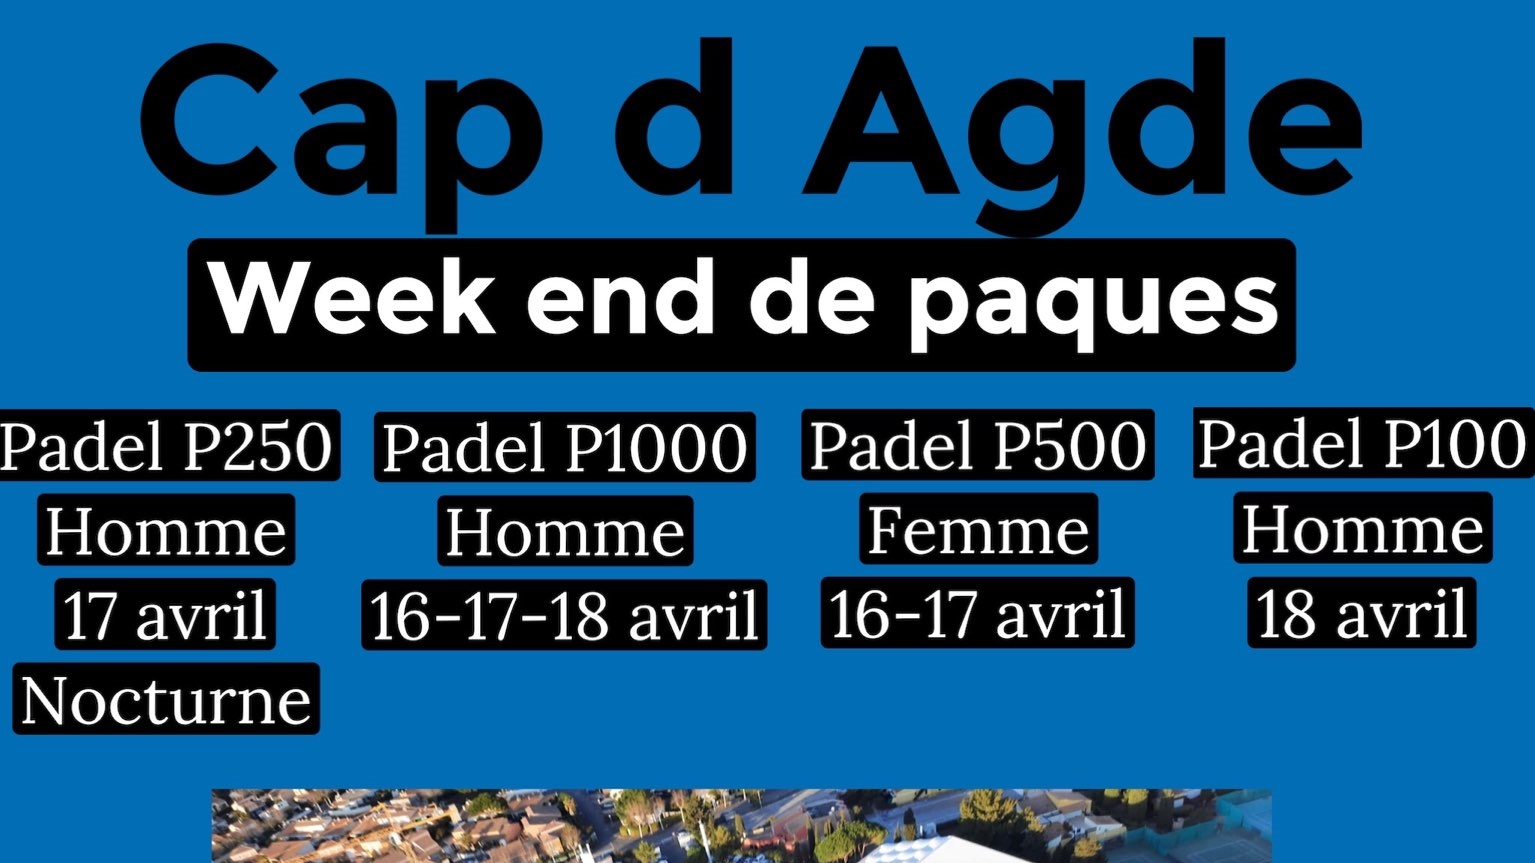 Cap d'Agde: P100 a P1000 del 16 al 18 de abril